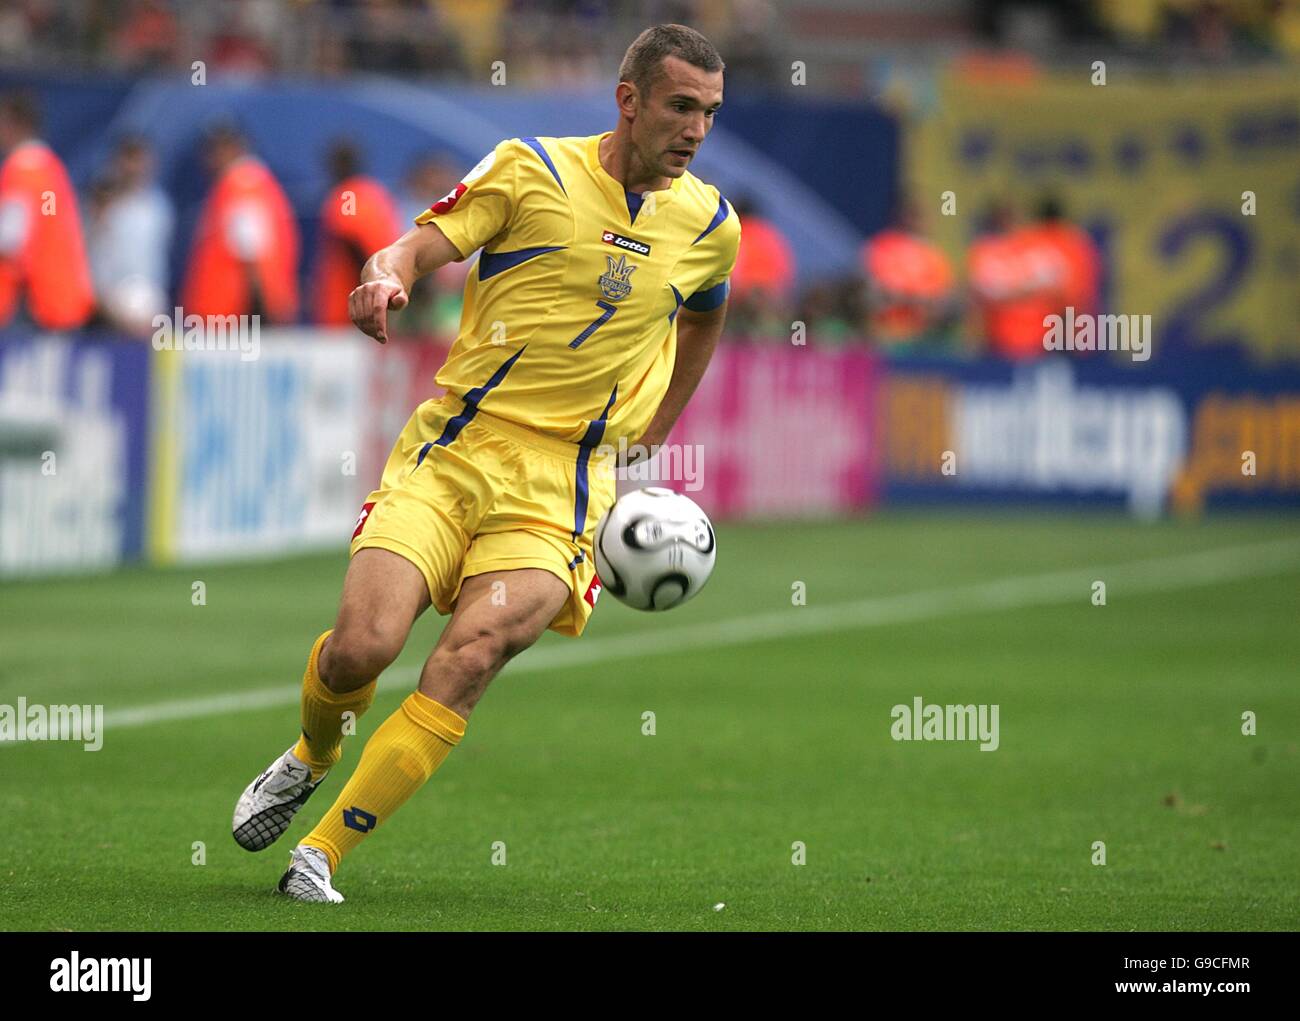 Calcio - Coppa del mondo FIFA 2006 Germania - Gruppo H - Arabia Saudita / Ucraina - AOL Arena. Andry Shevchenko, Ucraina Foto Stock